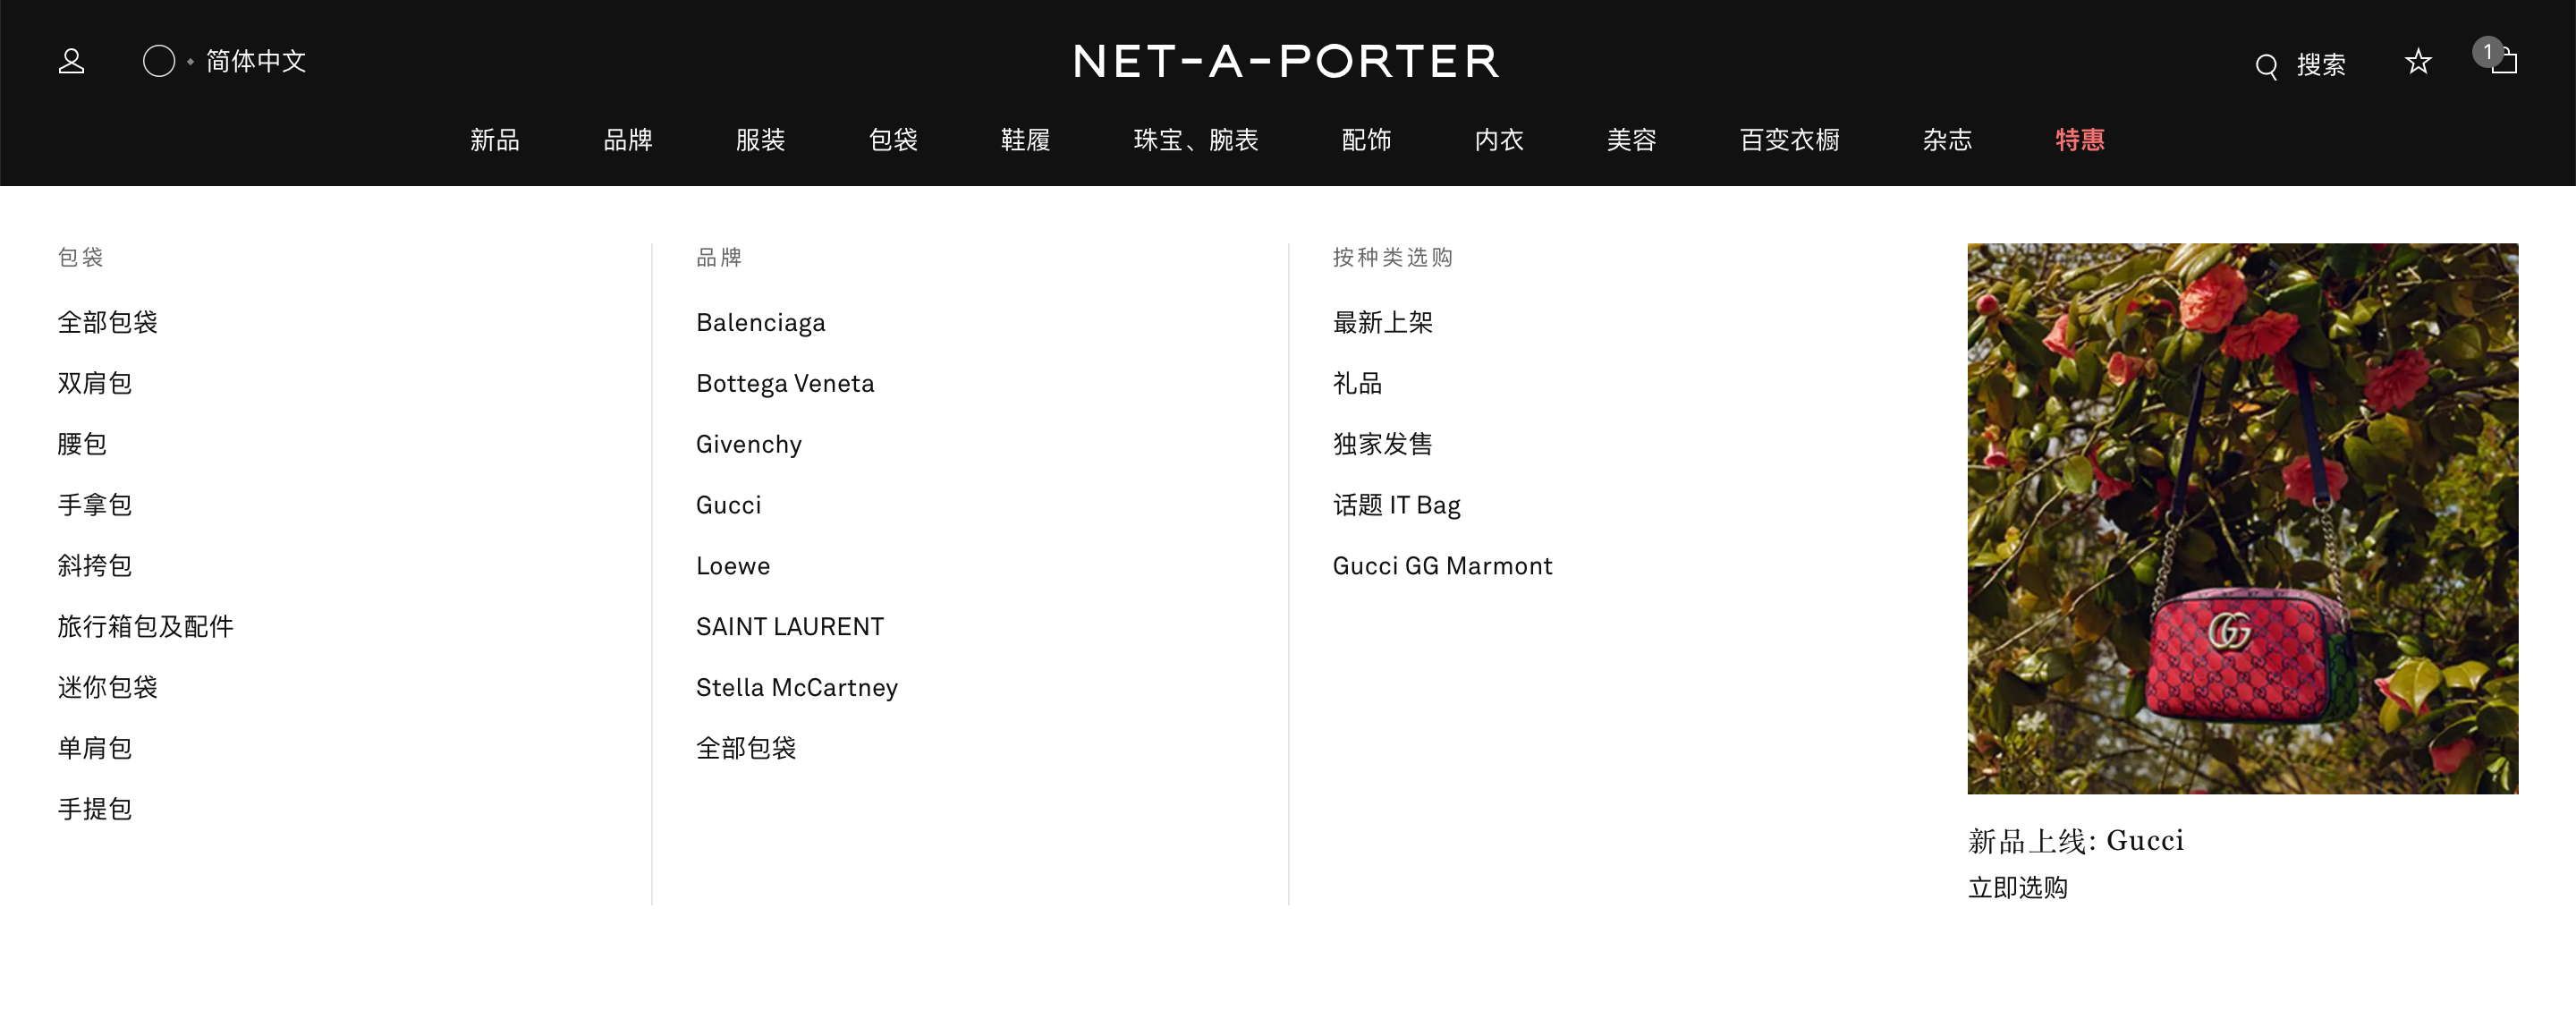 NET-A-PORTER商品分類